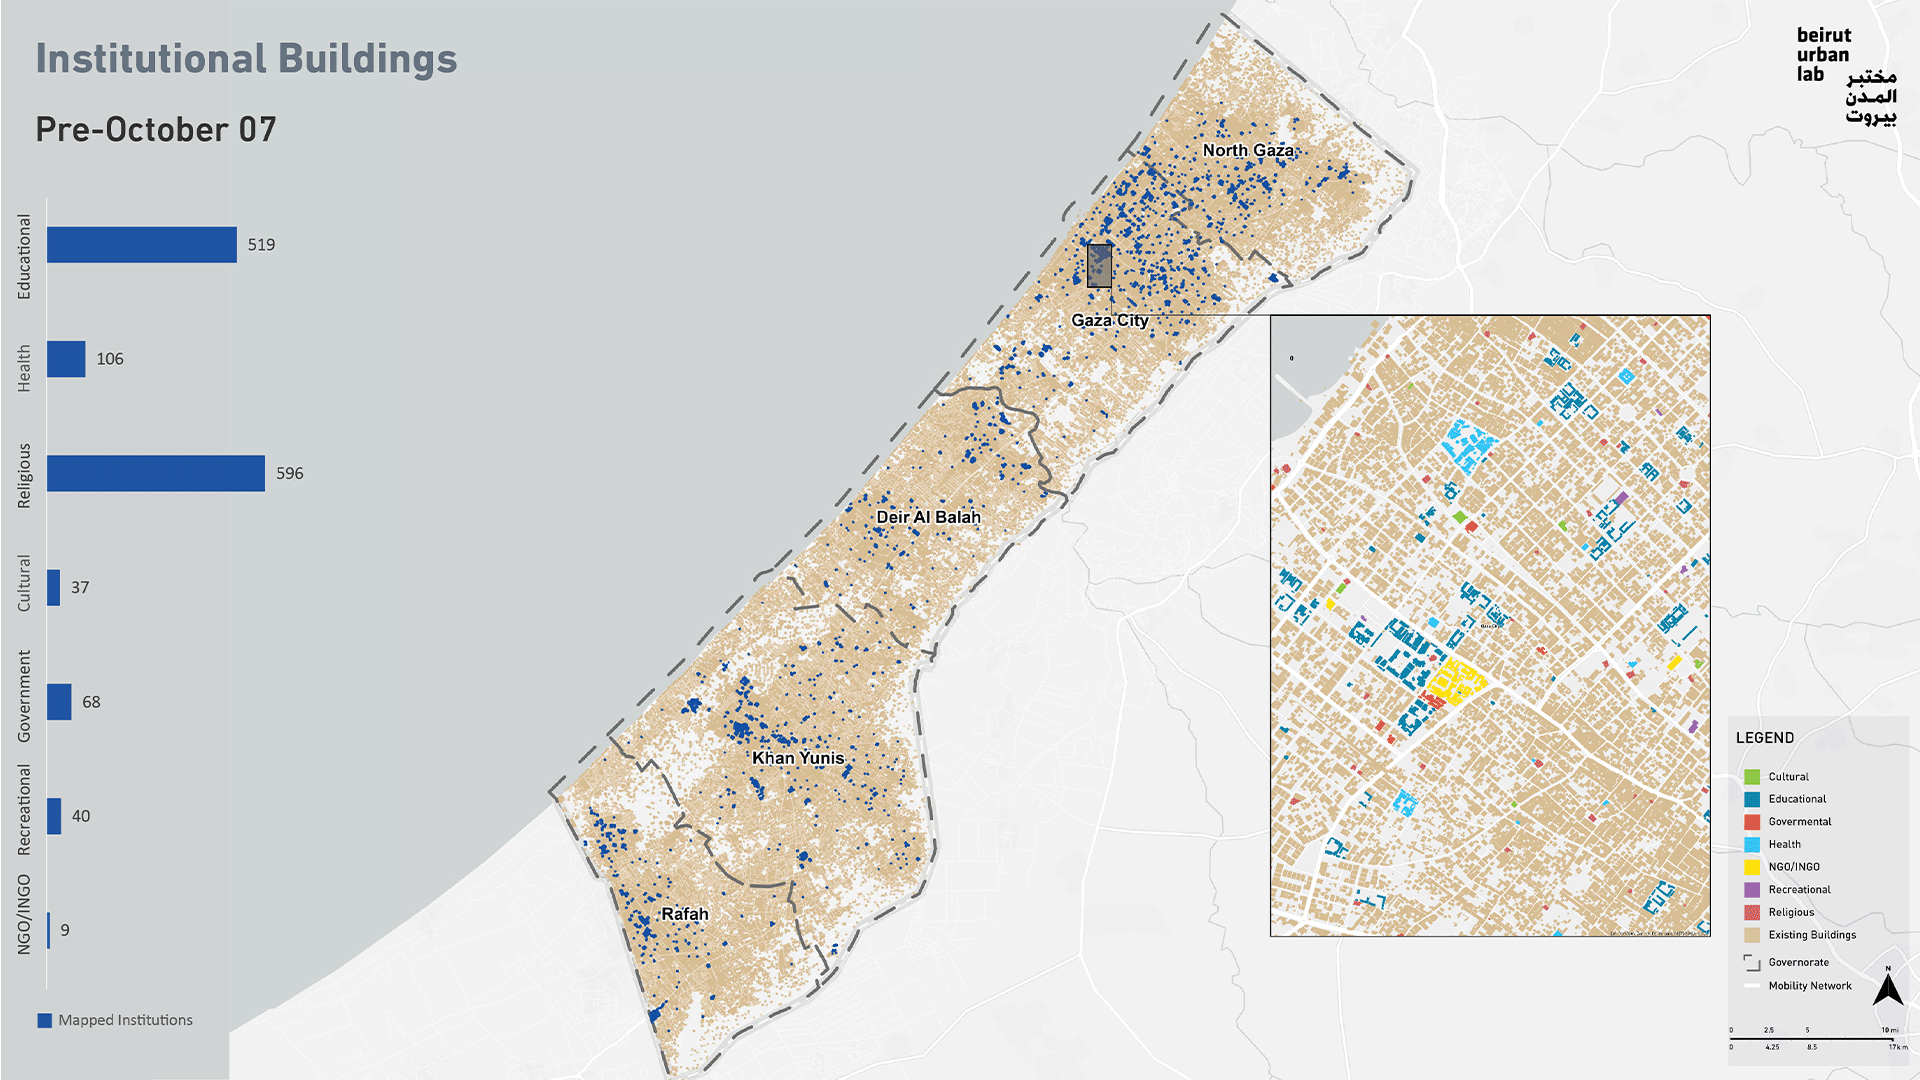 الأضرار اللاحقة بالمؤسسات في غزة. المصدر: مختبر المدن في بيروت بالاستناد إلى بيانات من يونوسات UNOSAT